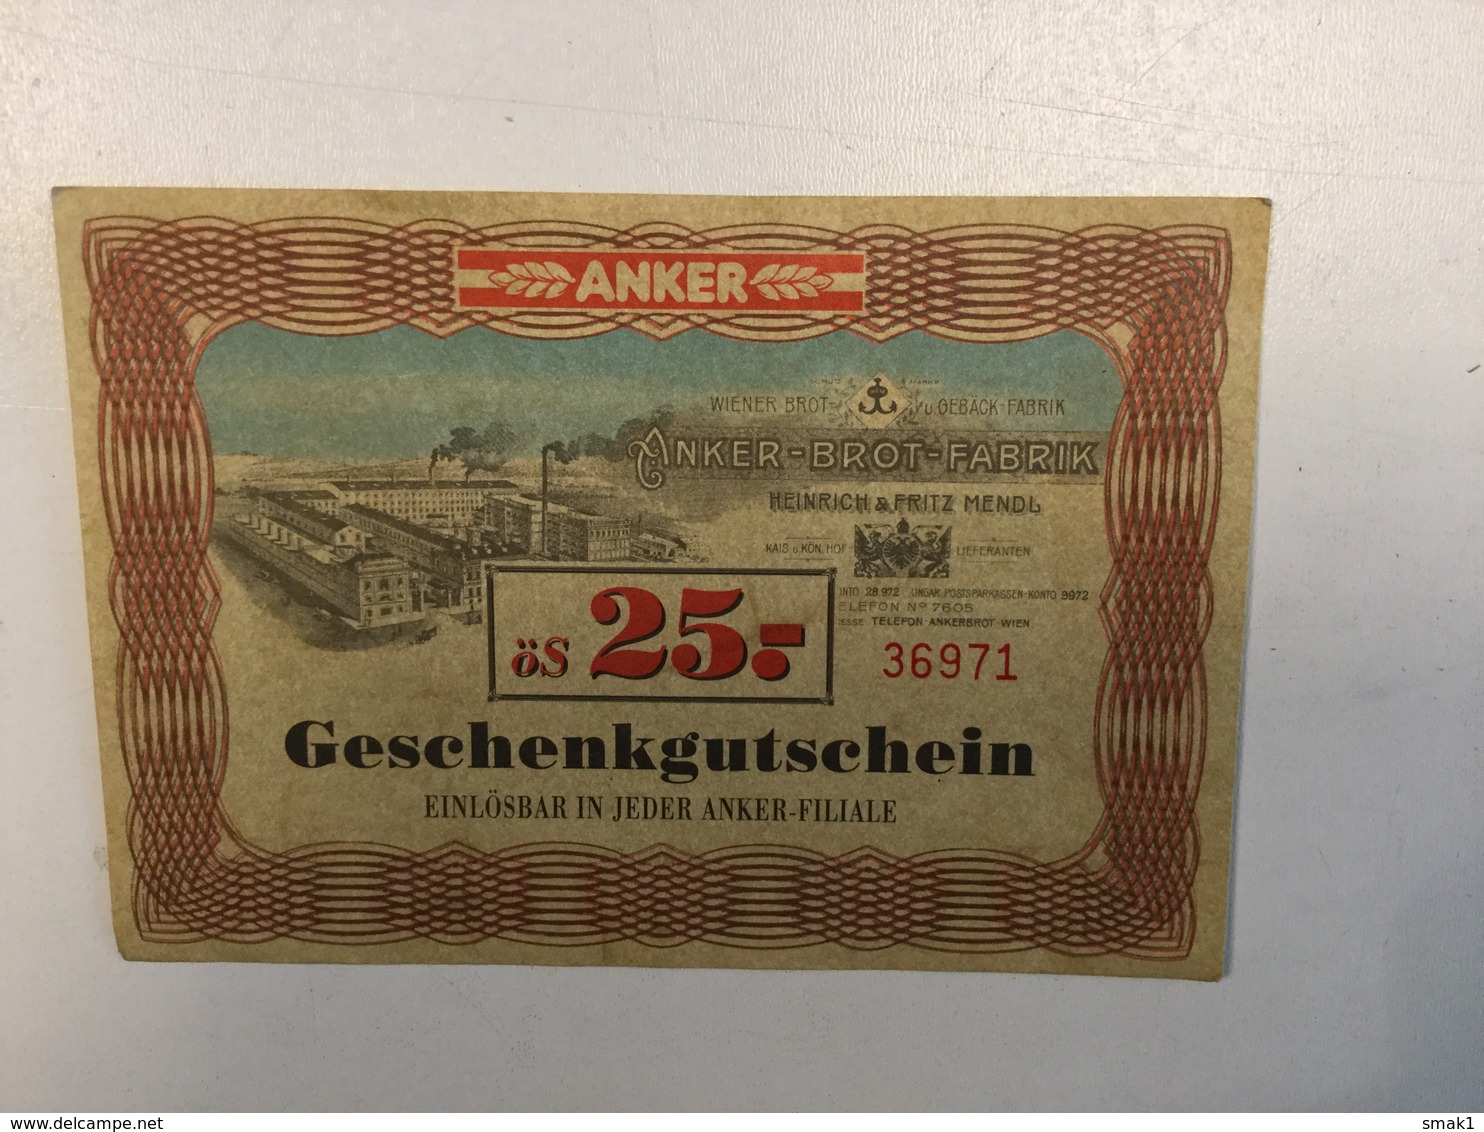 LOTTERY    ANKER BROT FABRIK  GESCHENKGUTSCHEIN   ös 25 - Billetes De Lotería